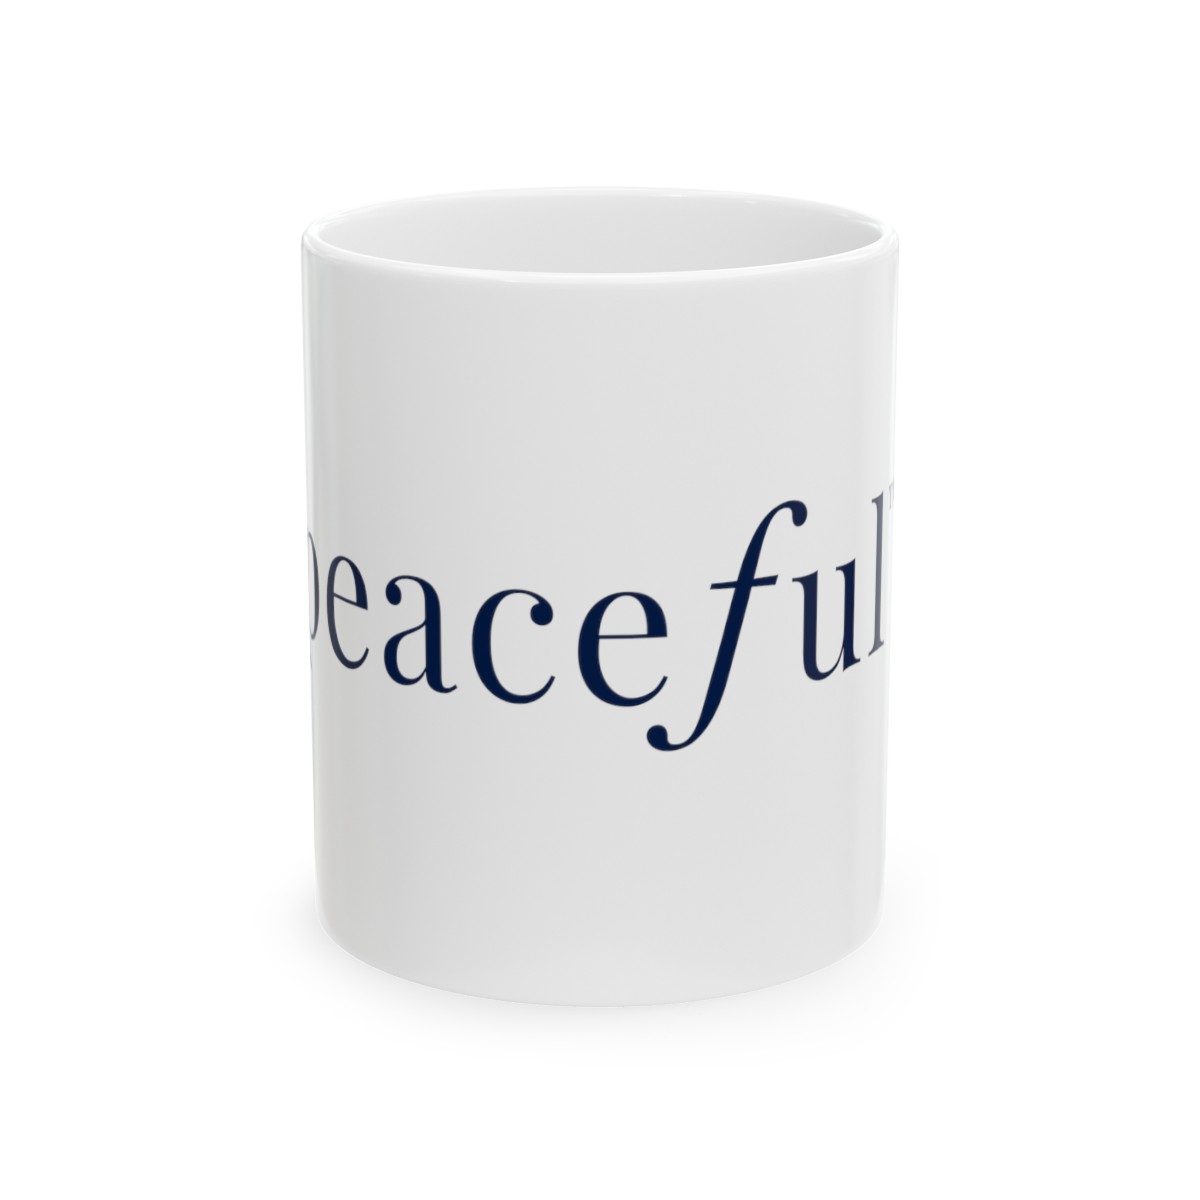 Peaceful Ceramic Mug 11oz product thumbnail image